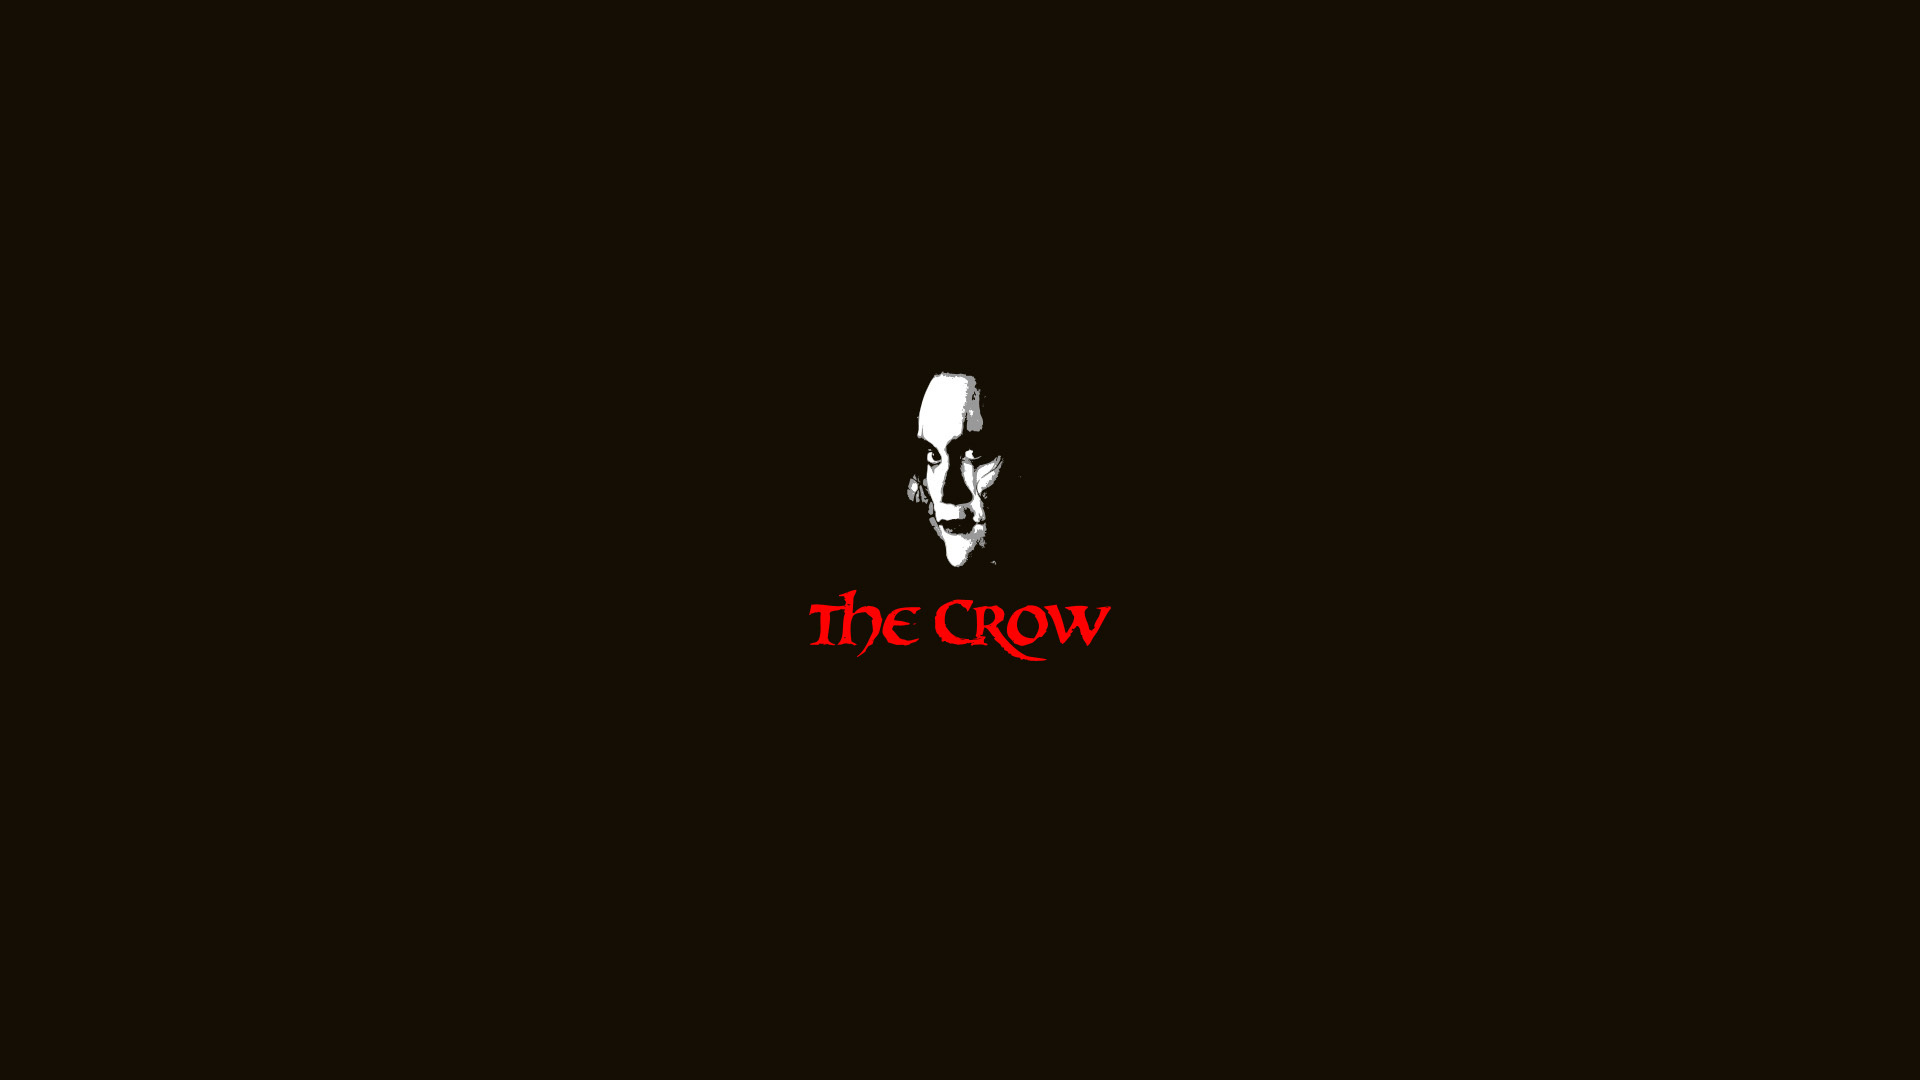 Brandon Lee Crows Action Fantasy Movie The Crow Movies Dark Wallpaper